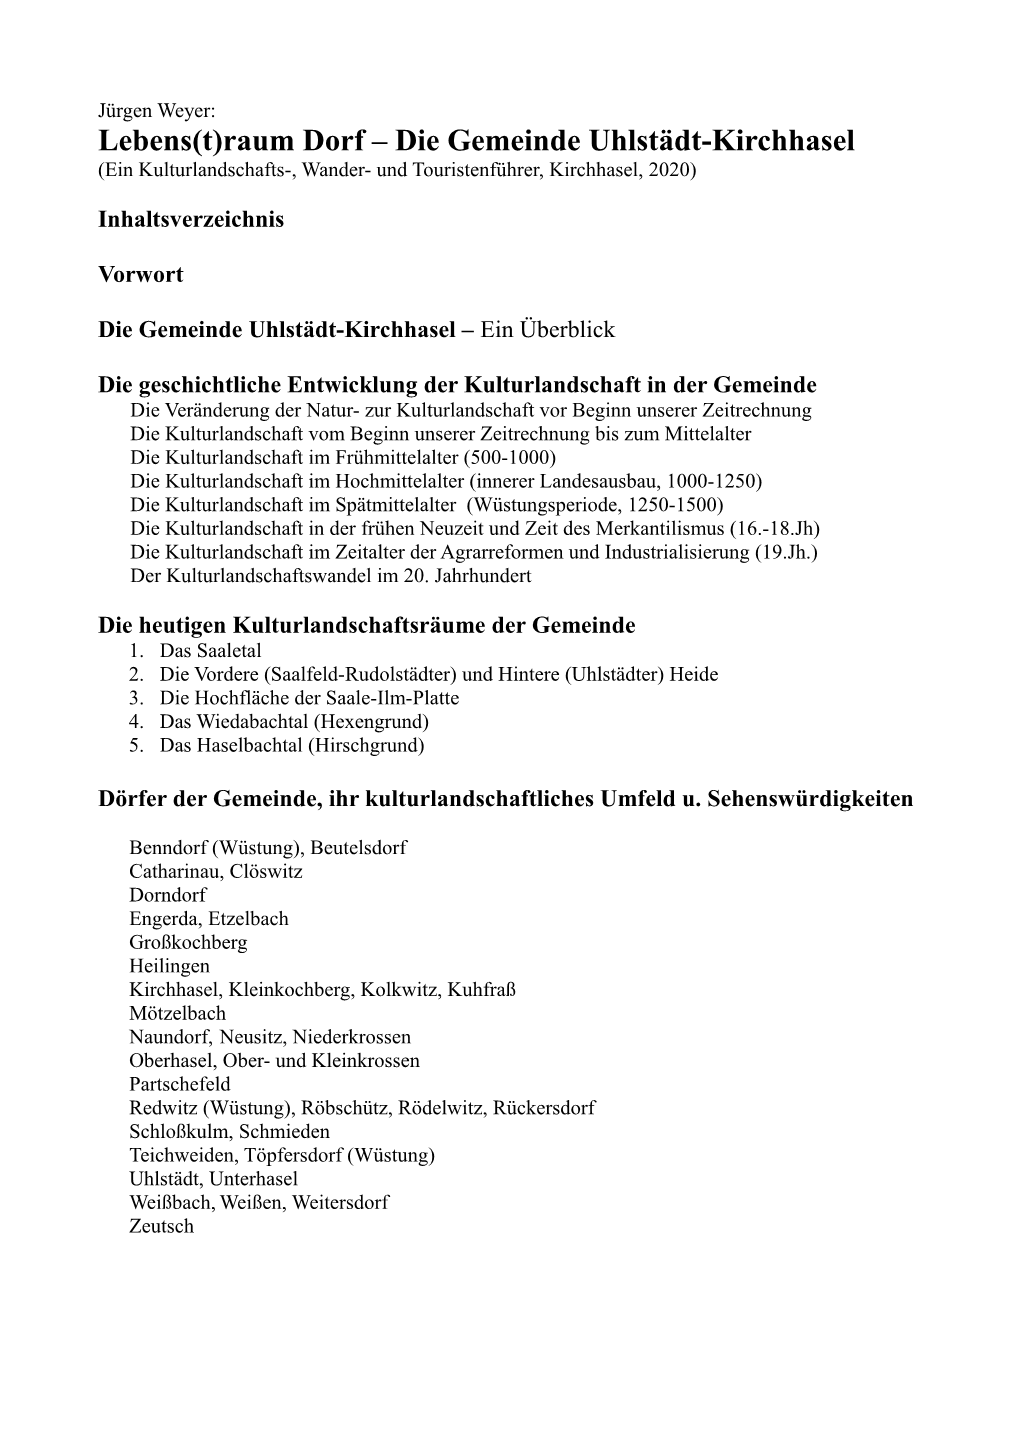 Die Gemeinde Uhlstädt-Kirchhasel (Ein Kulturlandschafts-, Wander- Und Touristenführer, Kirchhasel, 2020)